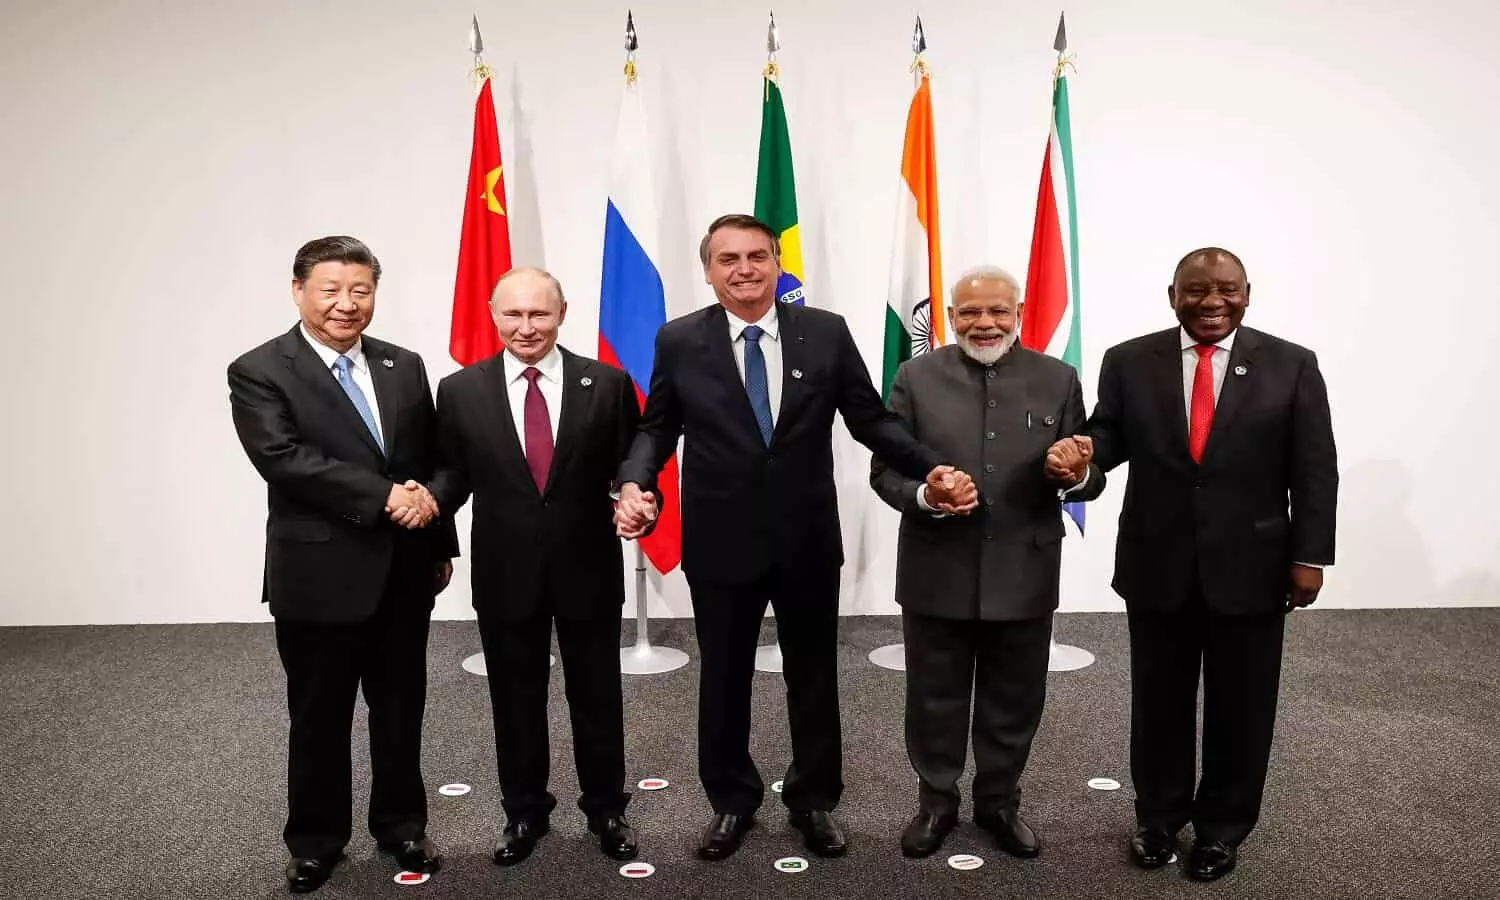 विकासशील देशों के समूह BRICS में, यह देश होना चाहता हैं शामिल